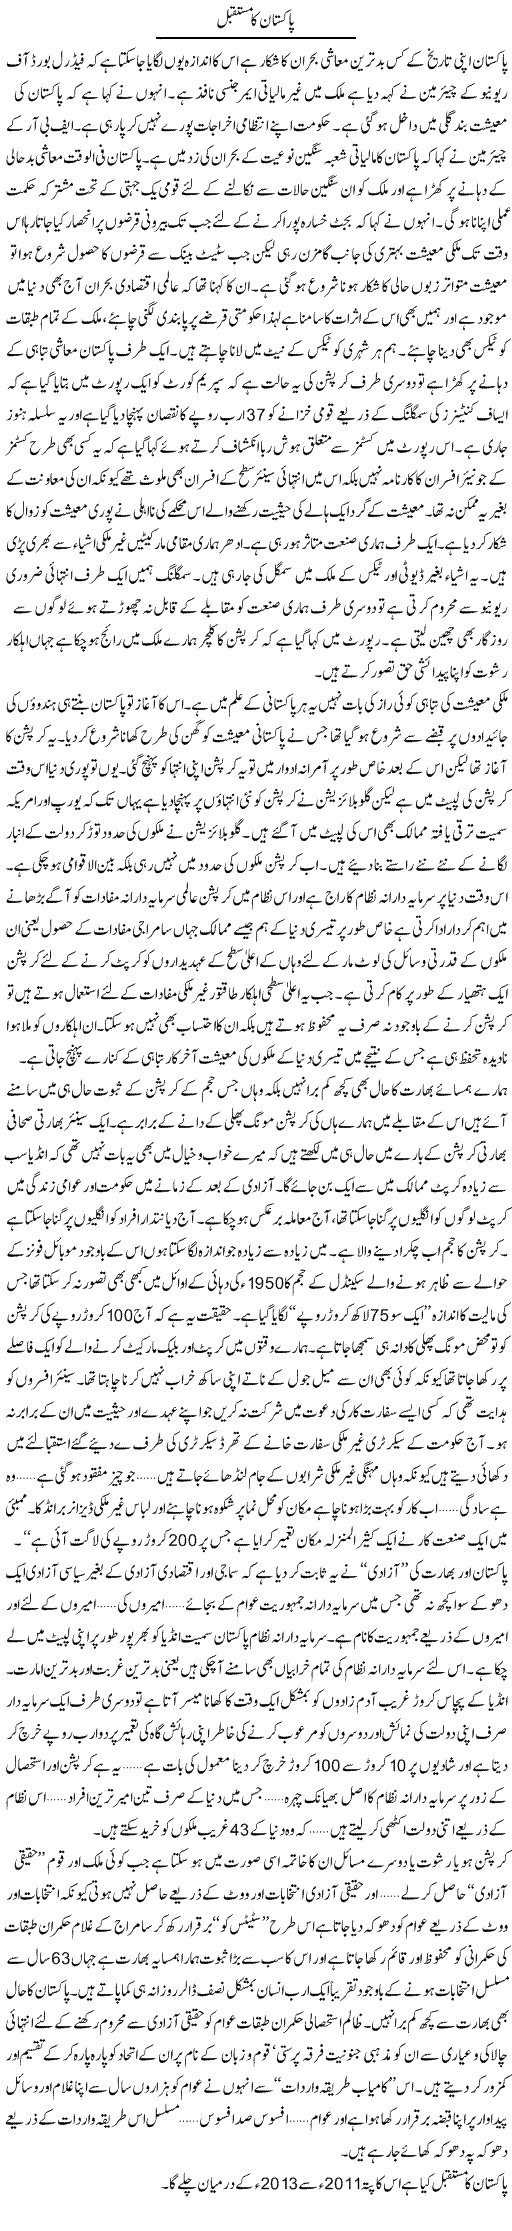 Pakistani Economy Express Column Zamrad Naqvi 24 January 2011